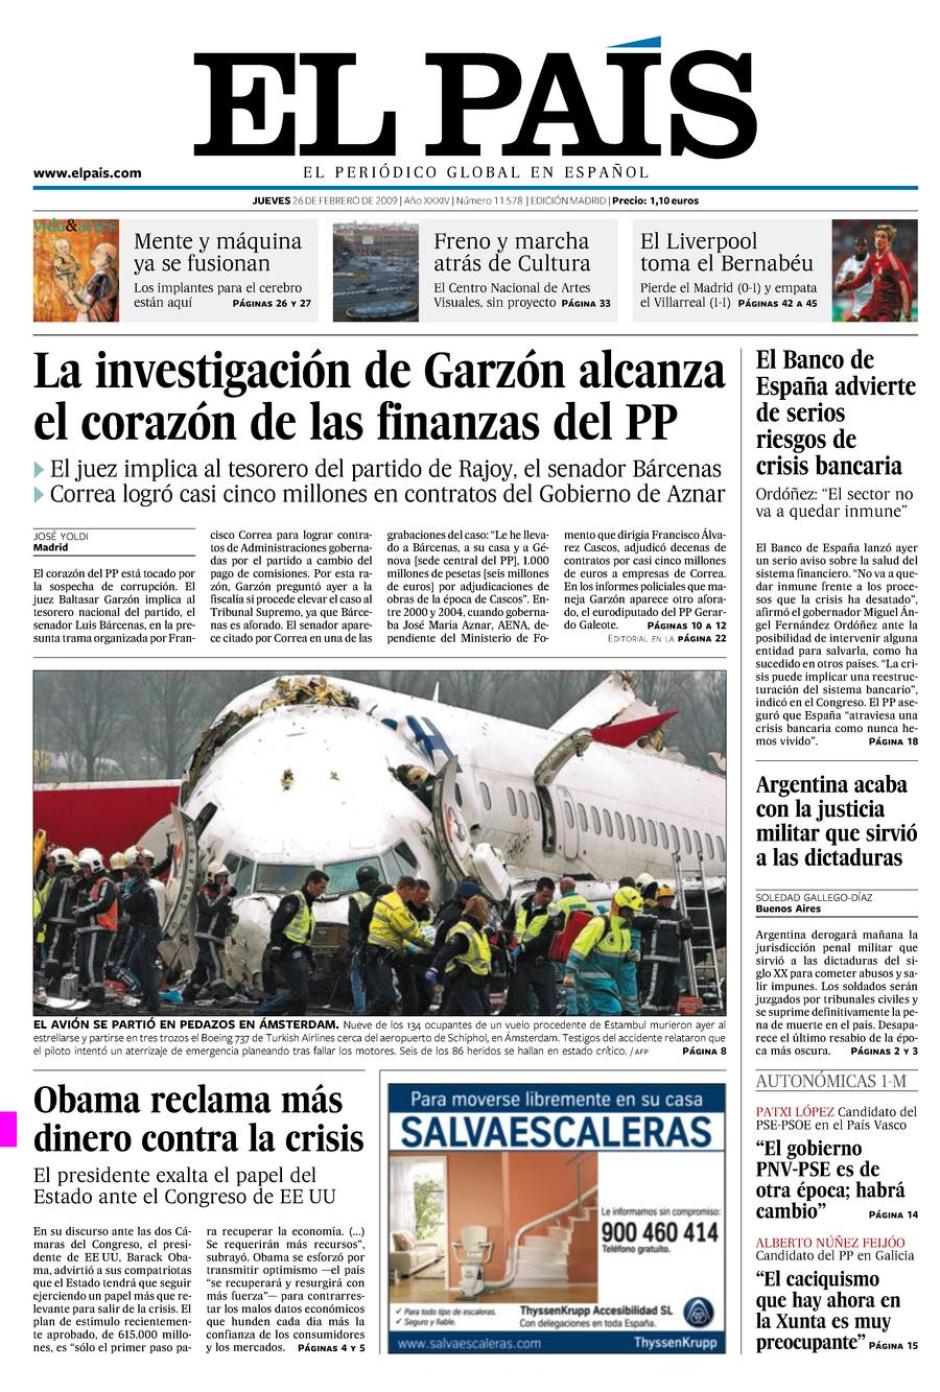 La portada de El País del 26 de febrero de 2009